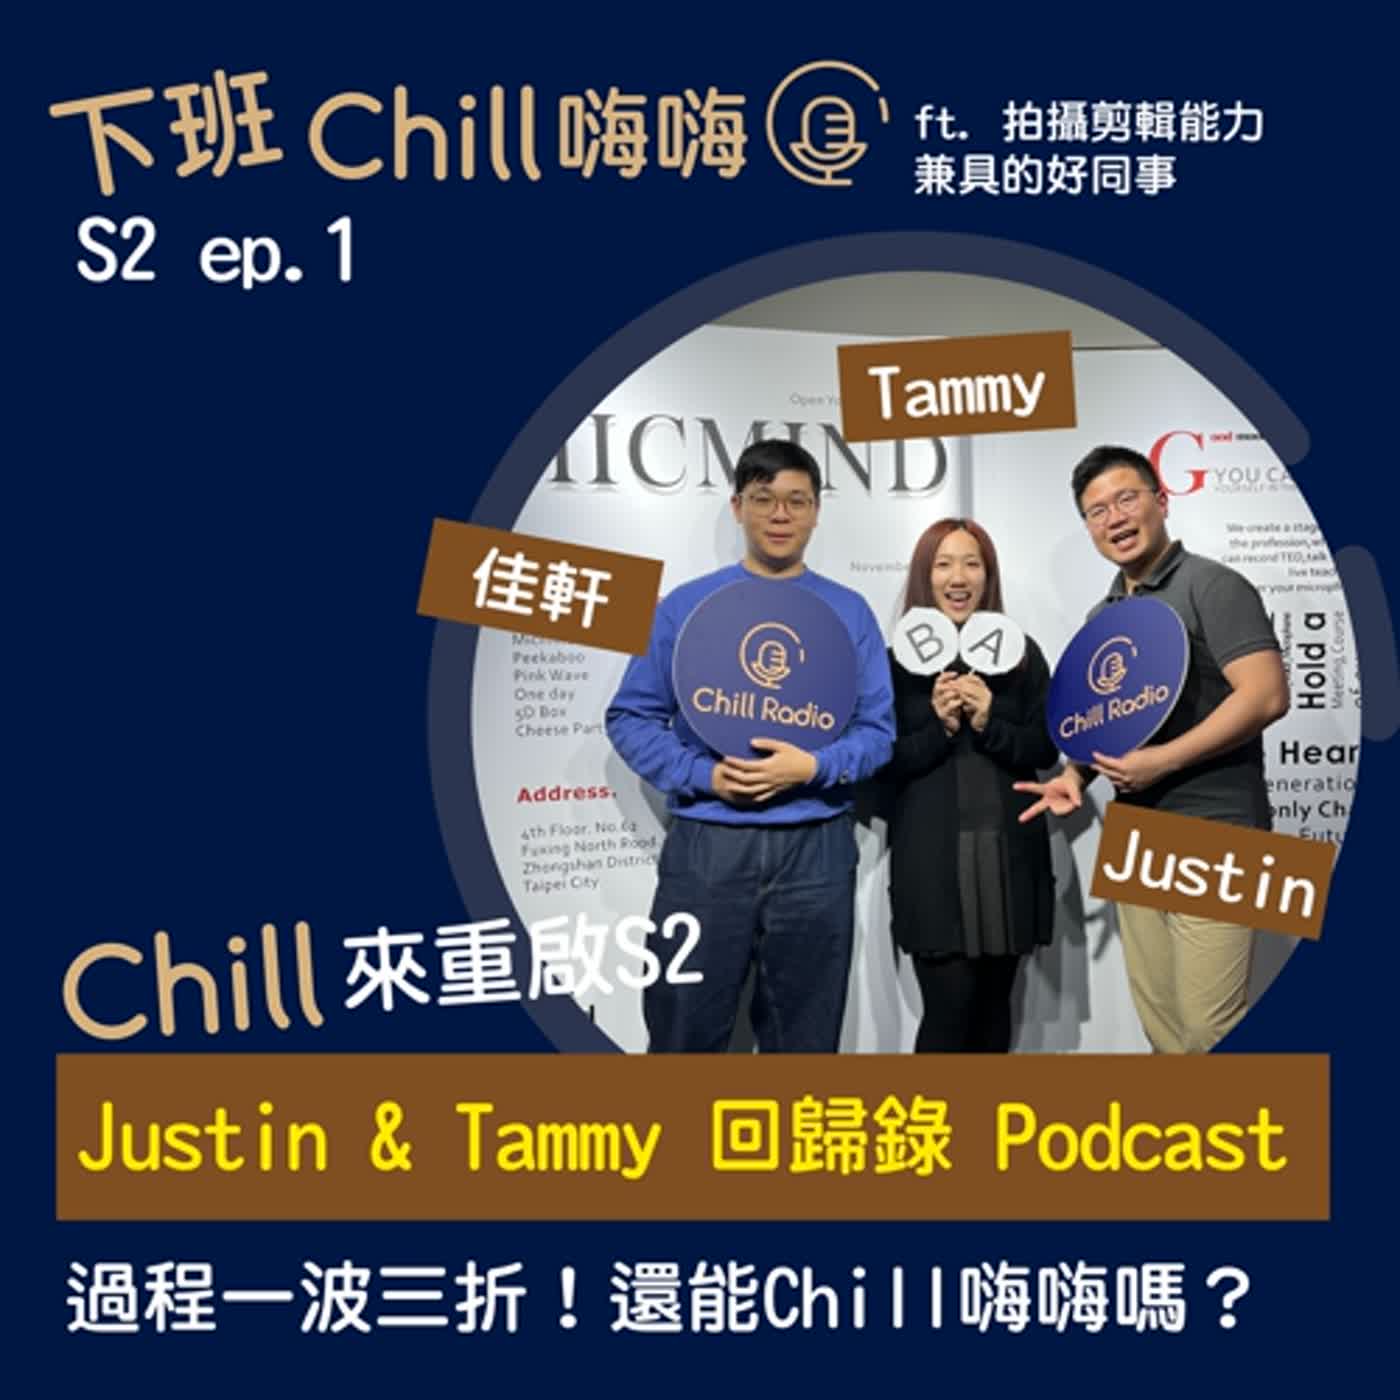 疫情後重返Podcast，還能持續Chill嗎？ ft. 佳軒 | S2 ep.1